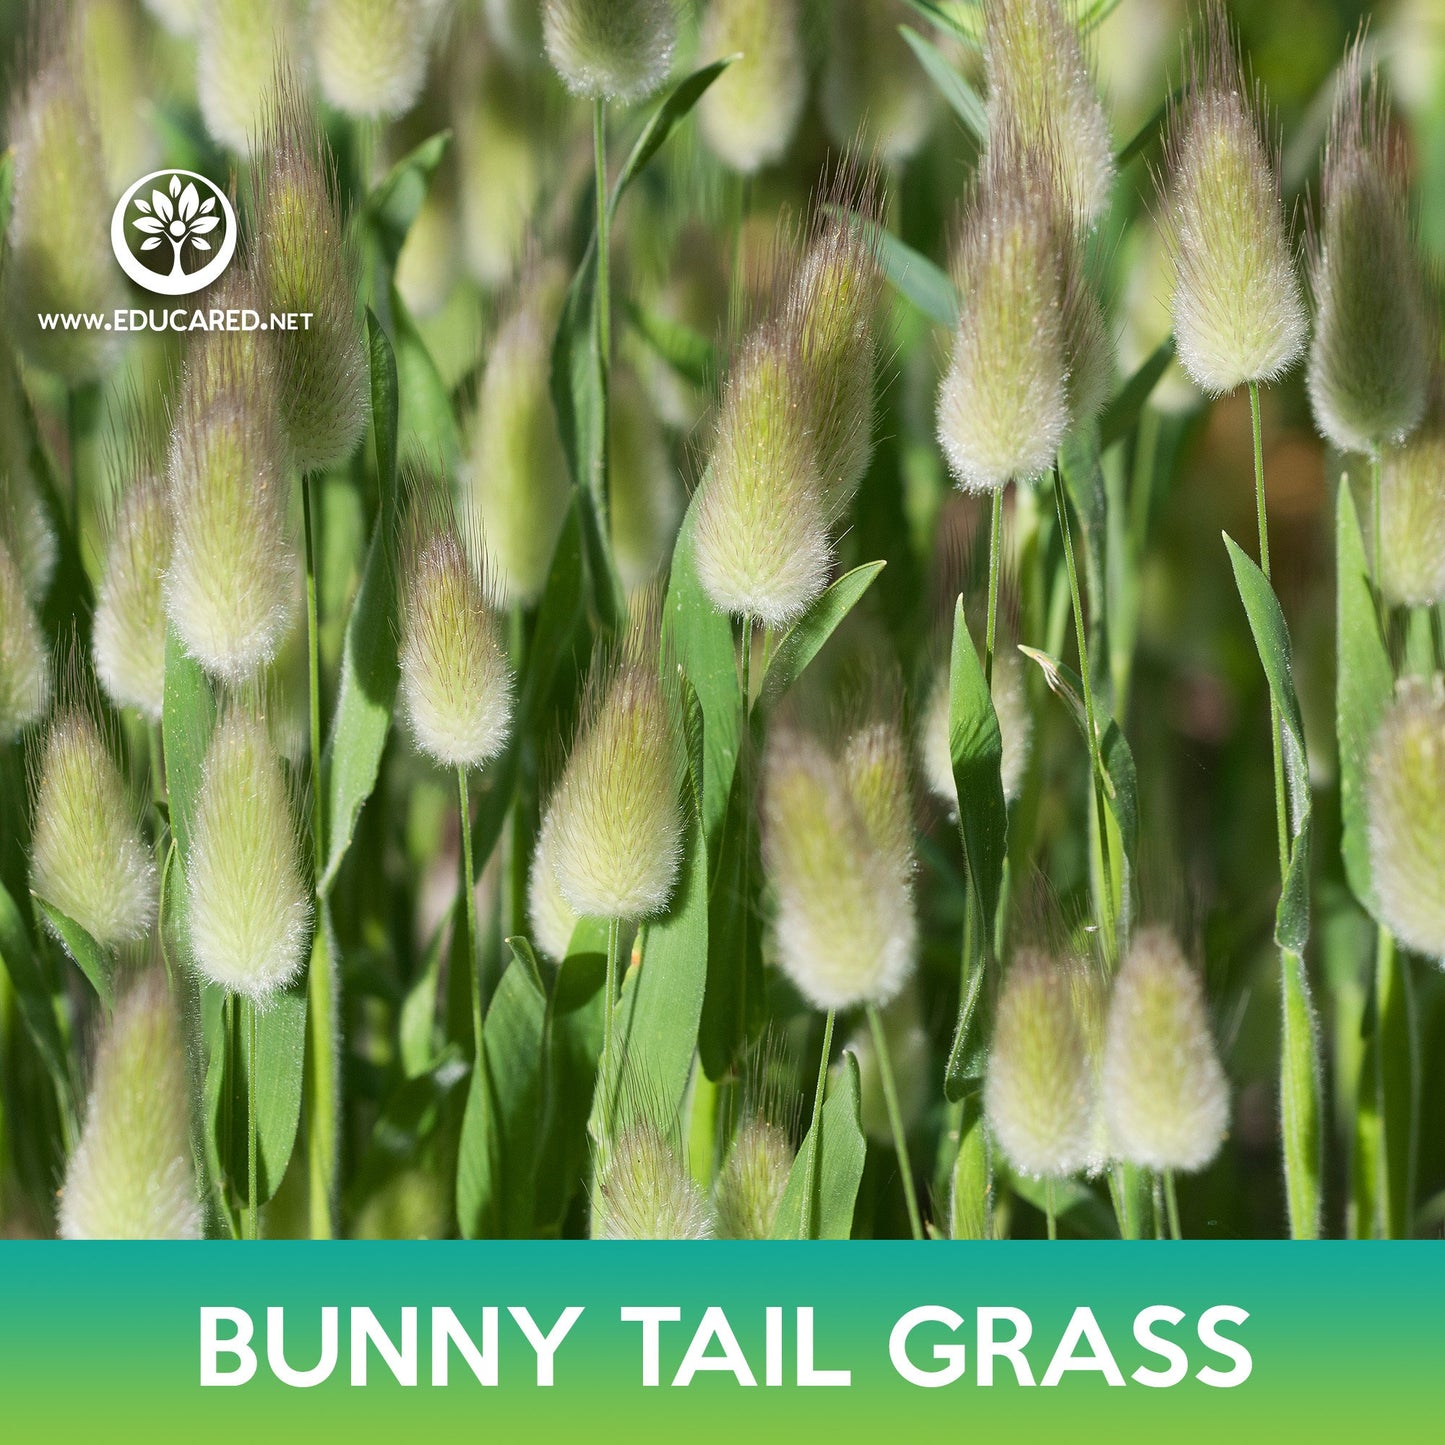 Bunny Tail Grass Seeds, Lagurus ovatus